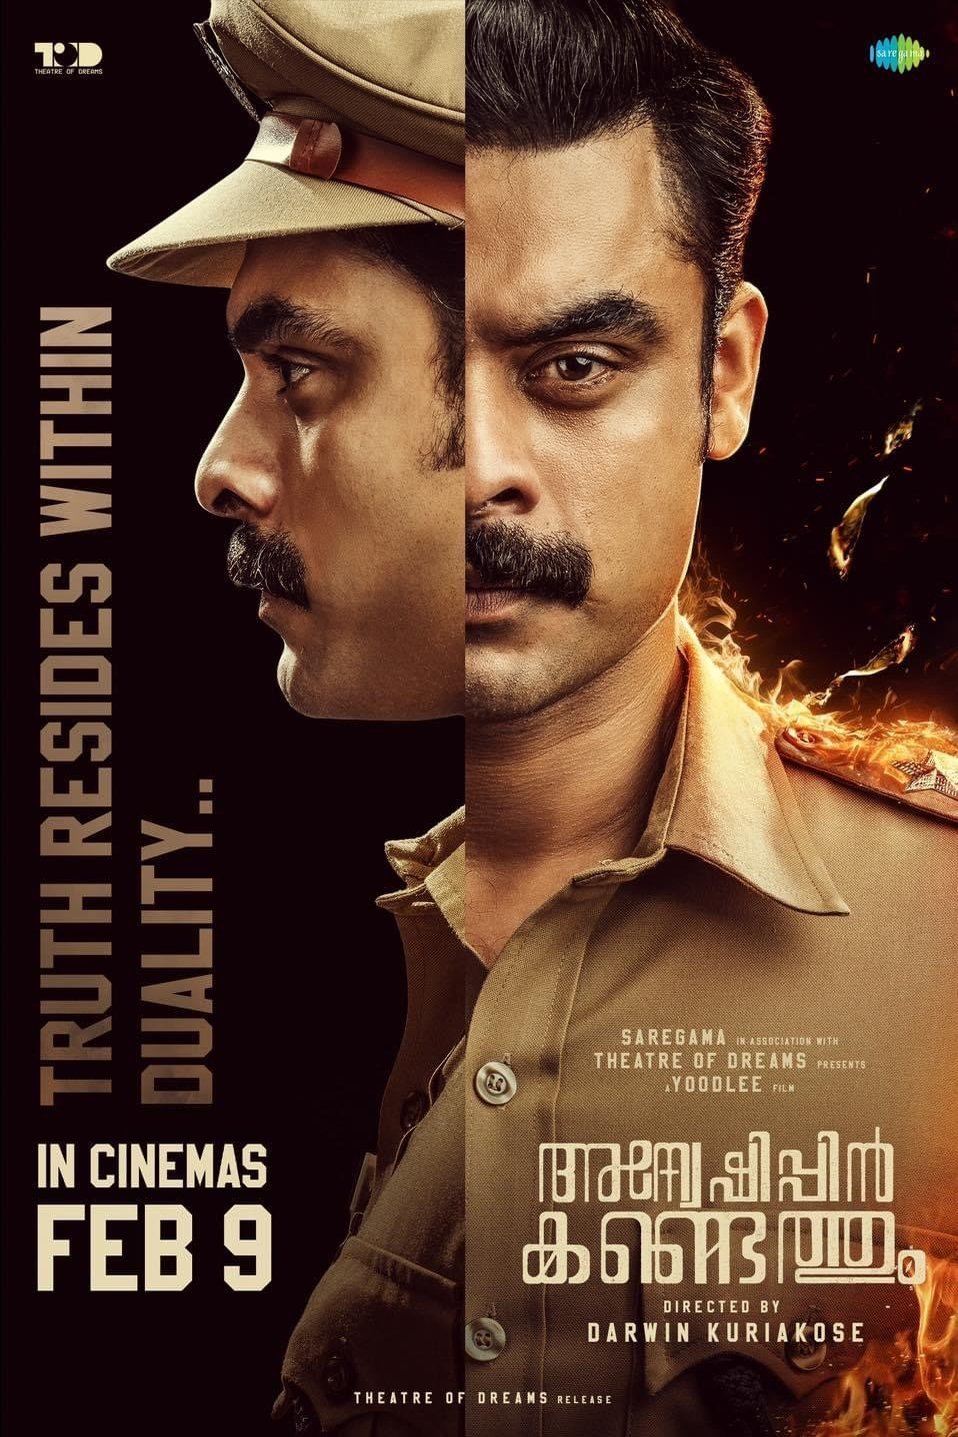 Malayalam poster of the movie Anweshippin Kandethum